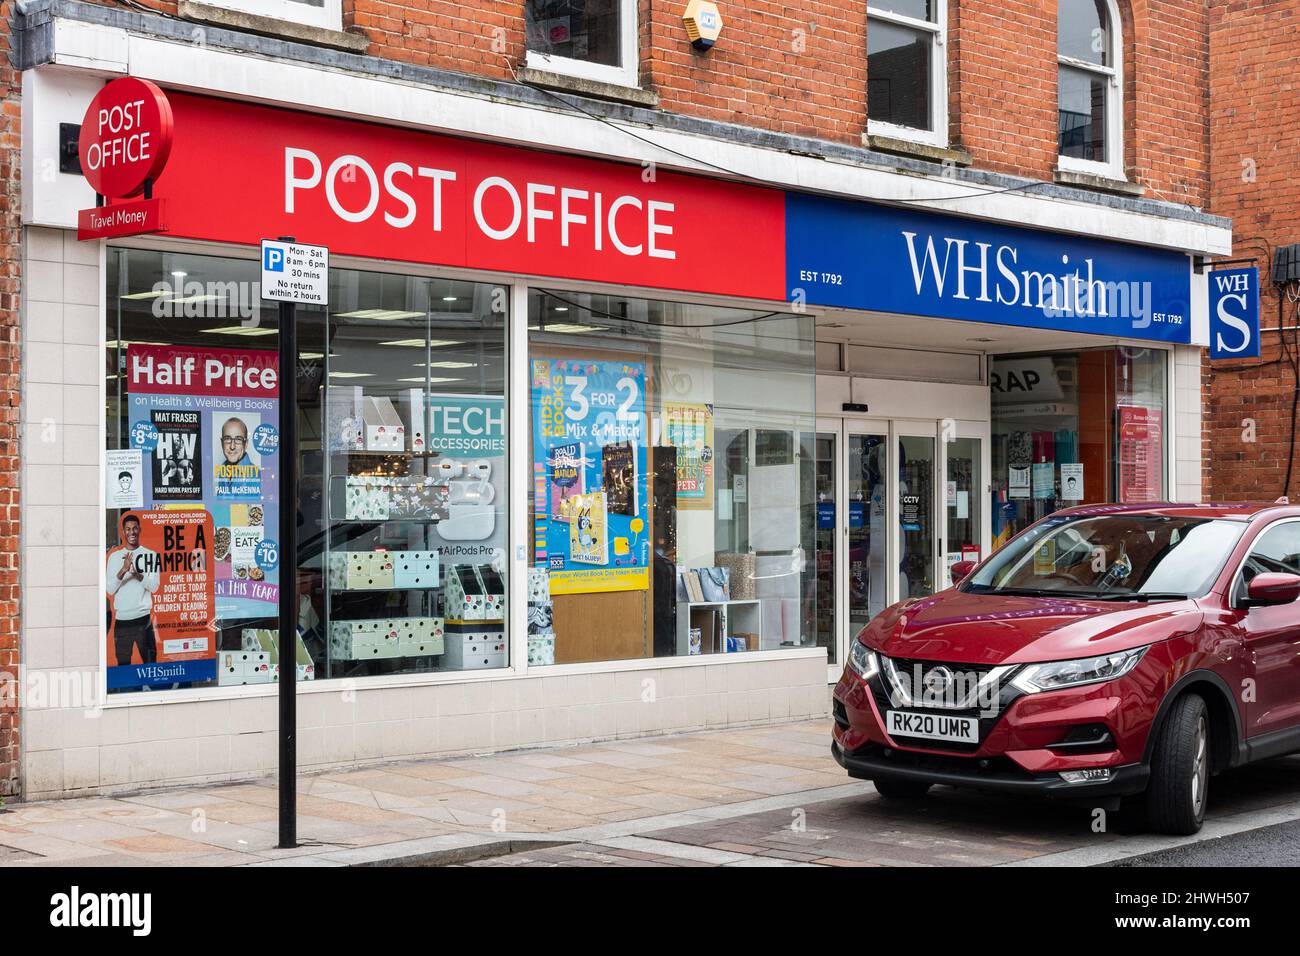 Succursale WHSmith avec bureau de poste, magasin sur Camberley High Street dans le centre-ville, Surrey, Angleterre, Royaume-Uni Banque D'Images